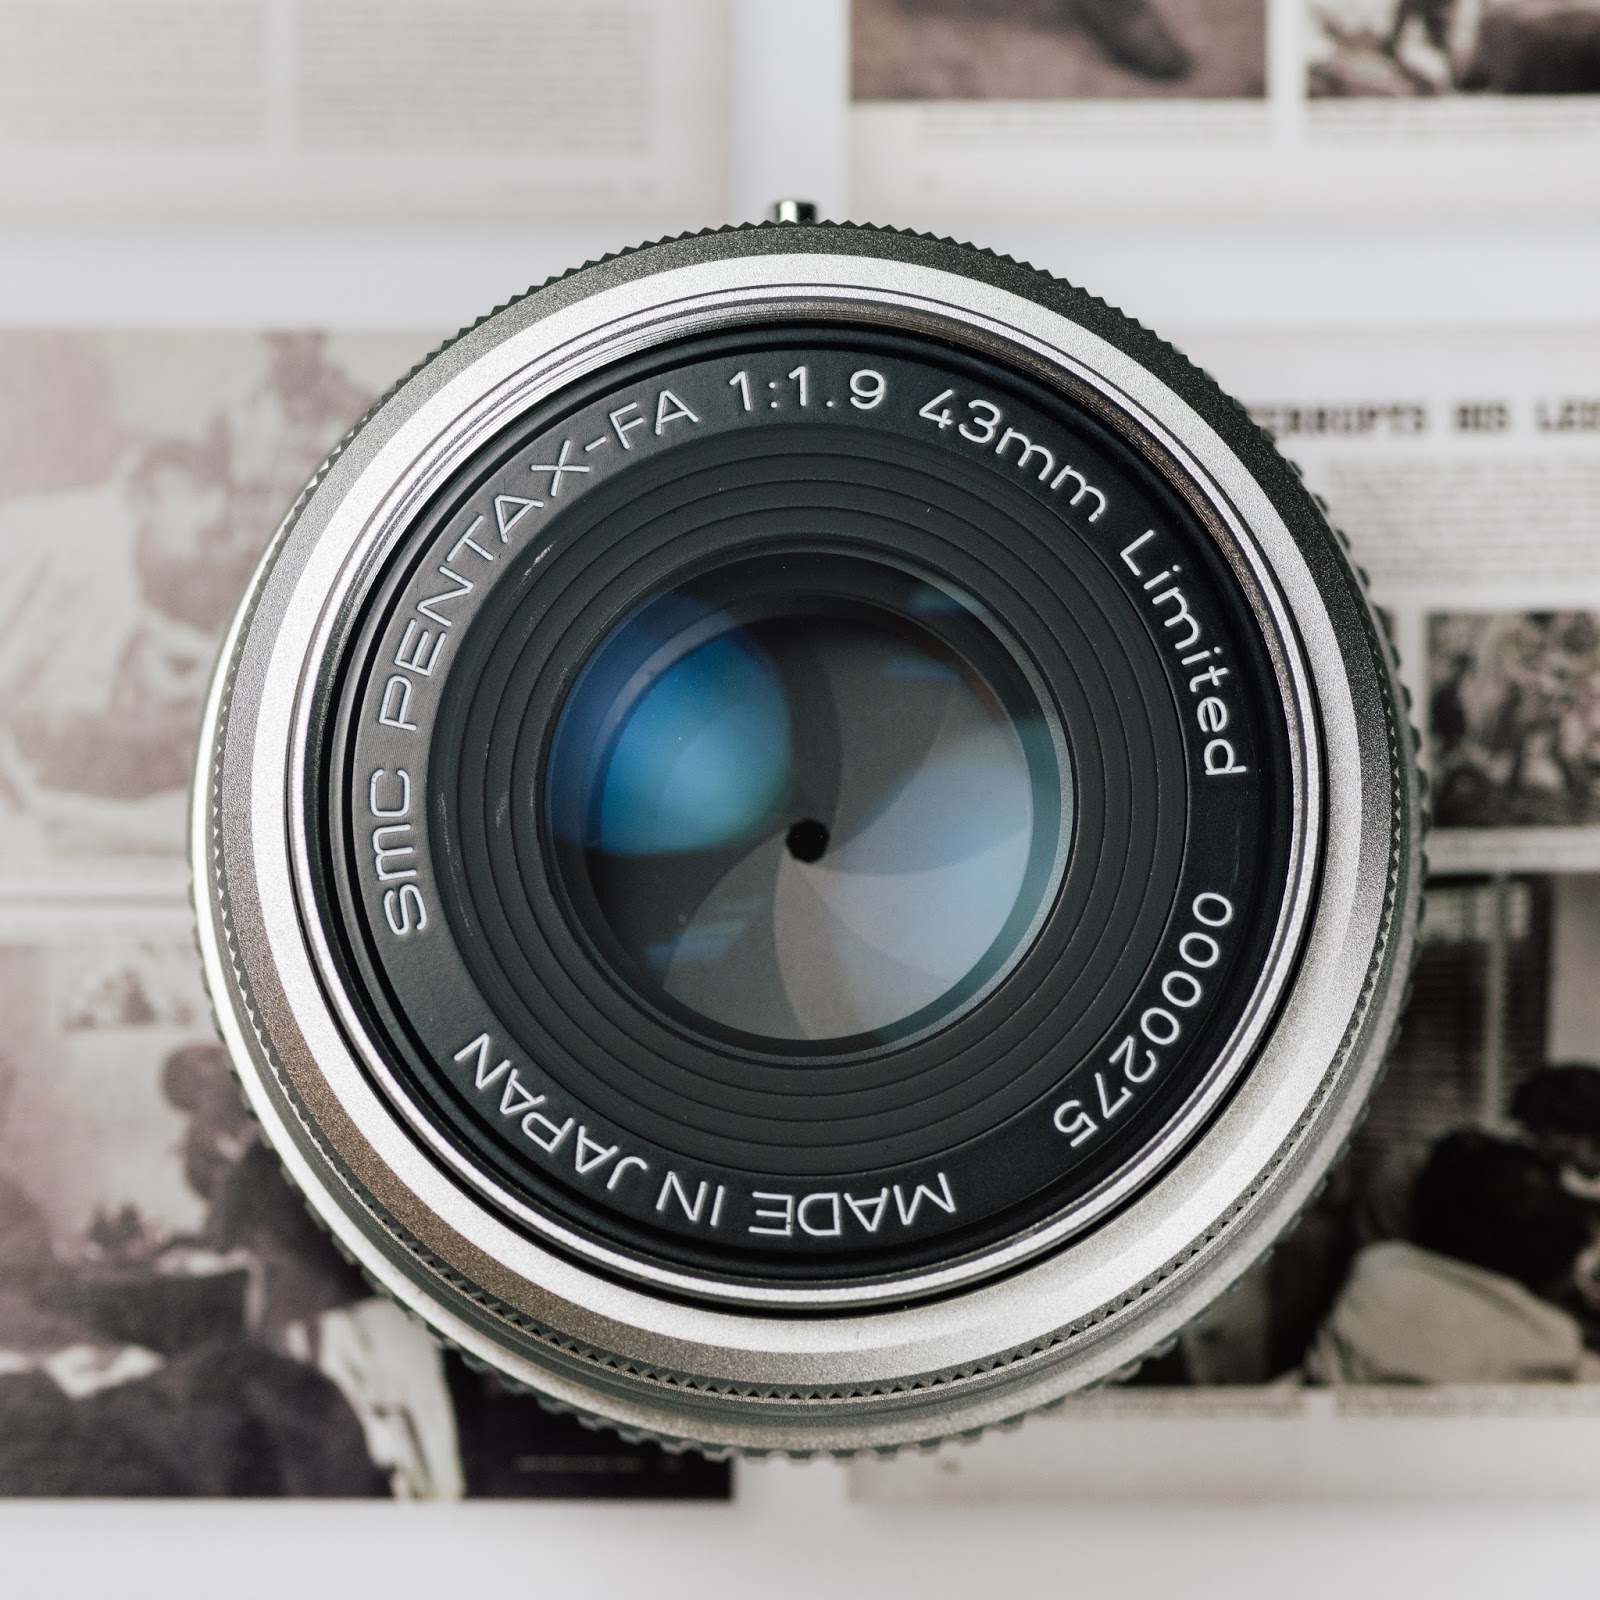 老鏡器材控: 大和撫子Pentax FA 43mm f/1.9 Limited